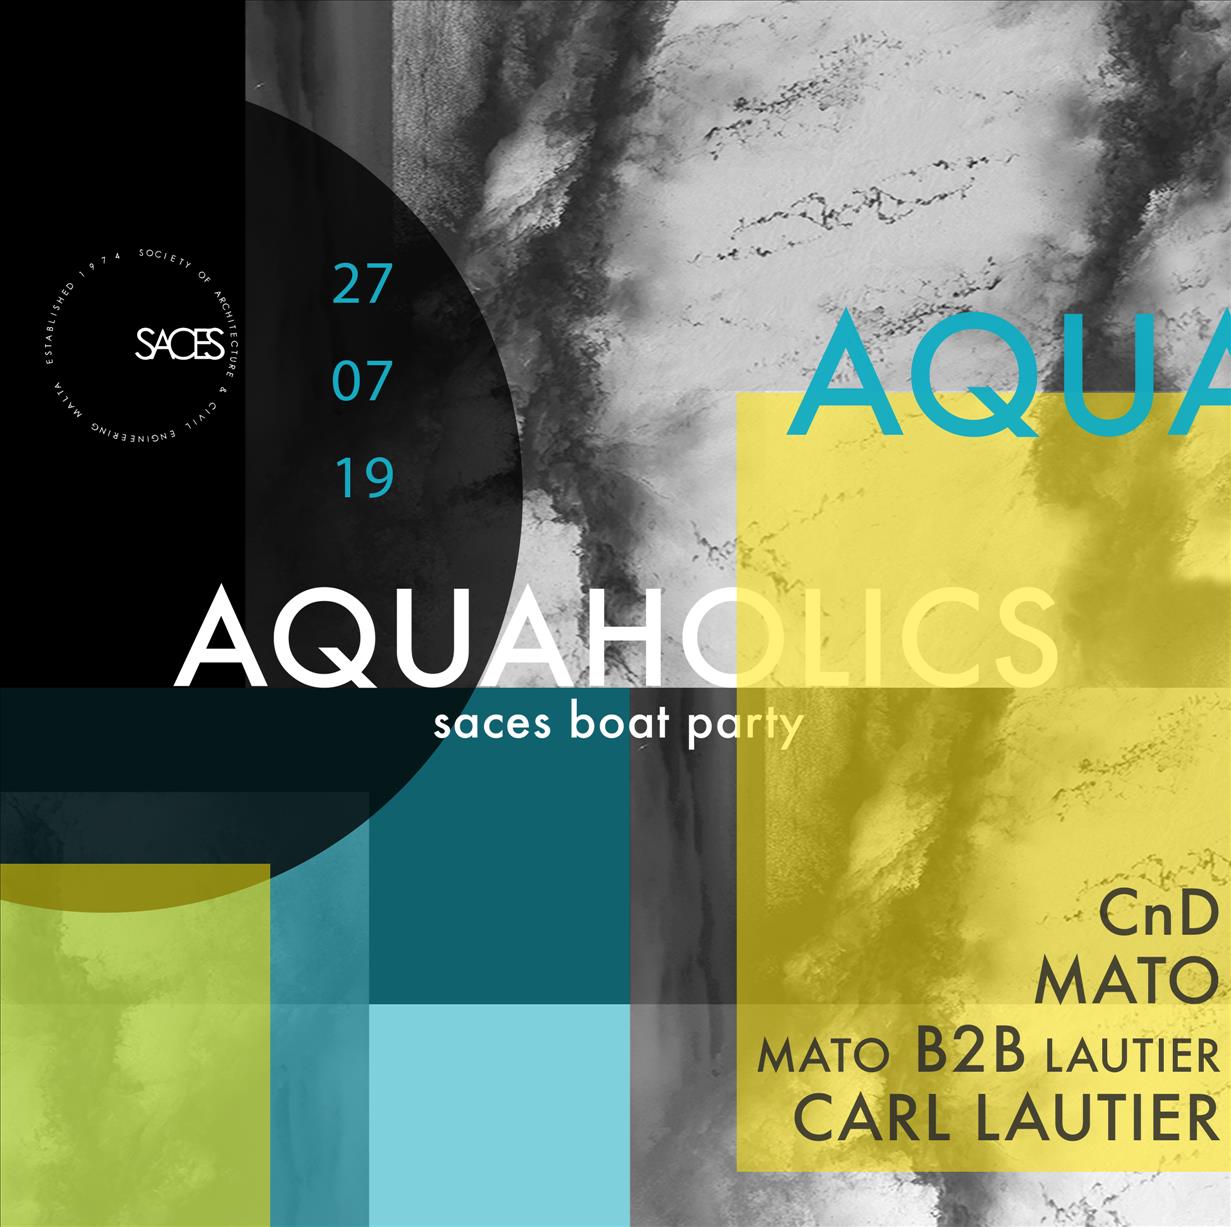 Aquaholics poster